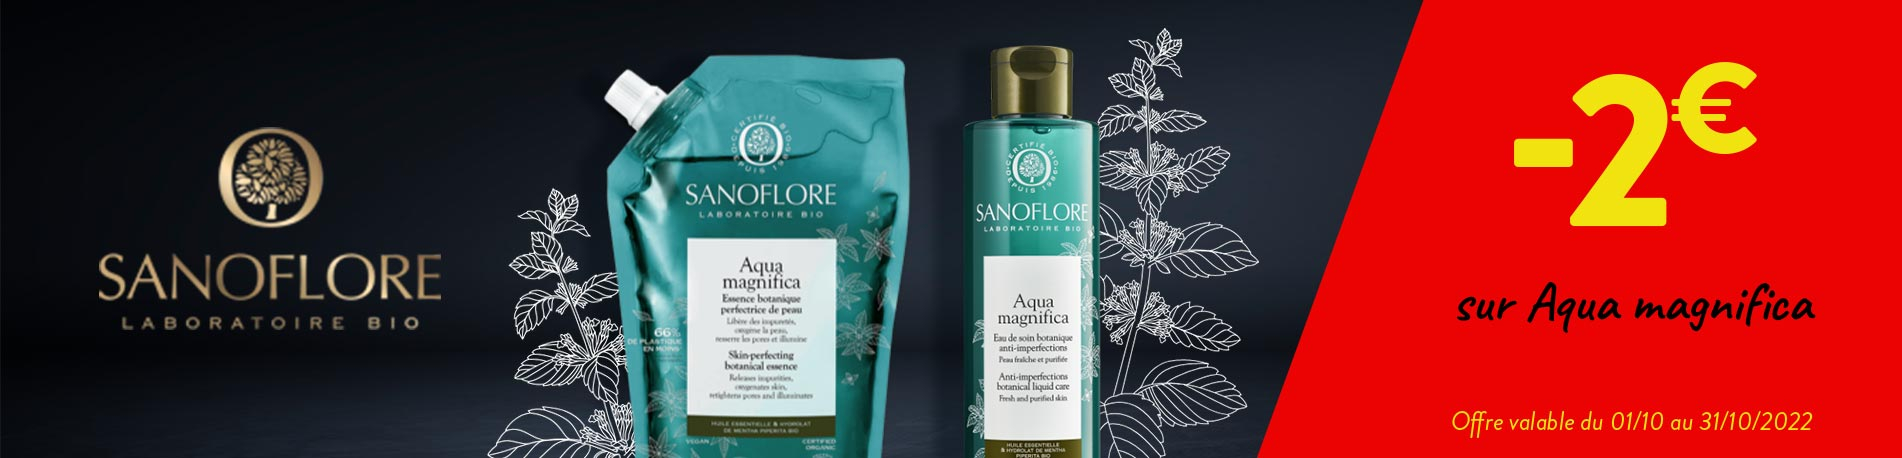 Promotion Sanoflore Aqua magnifica